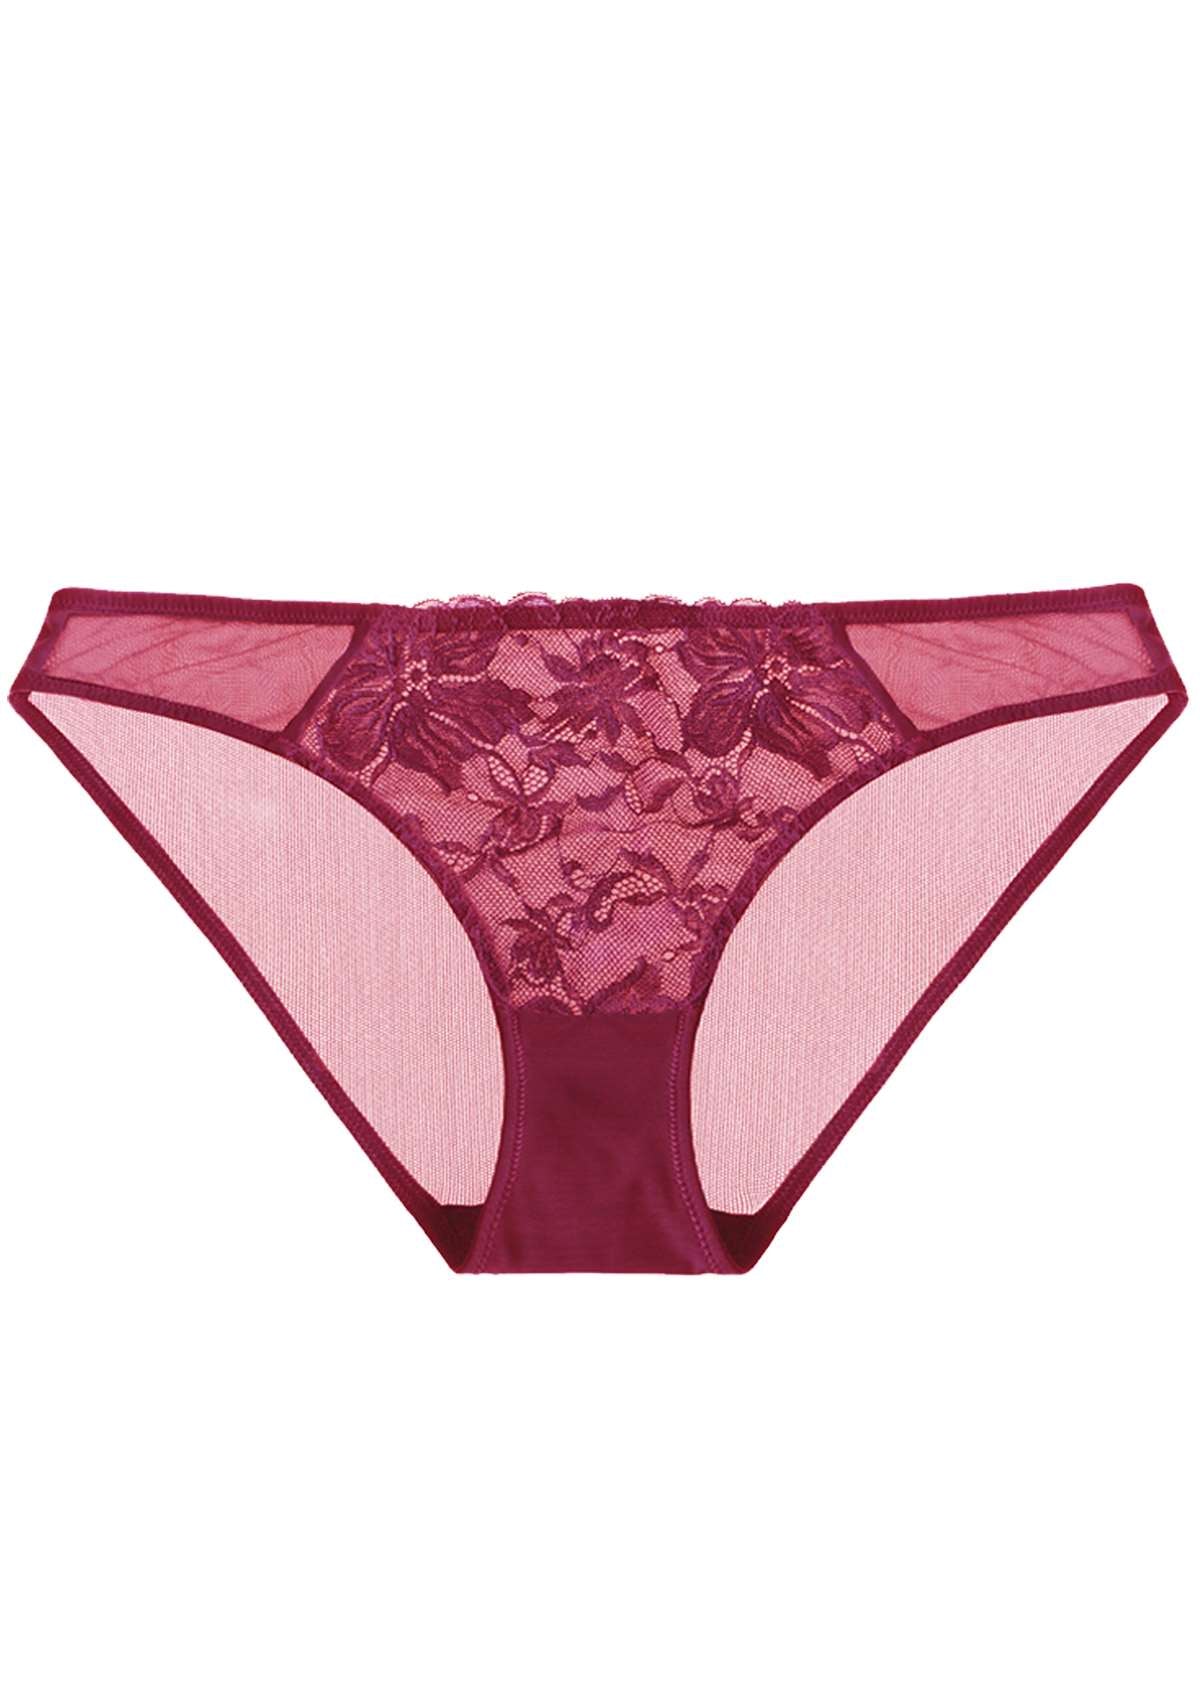 HSIA Breathable Sexy Feminine Lace Mesh Bikini Underwear - L / Light Coral